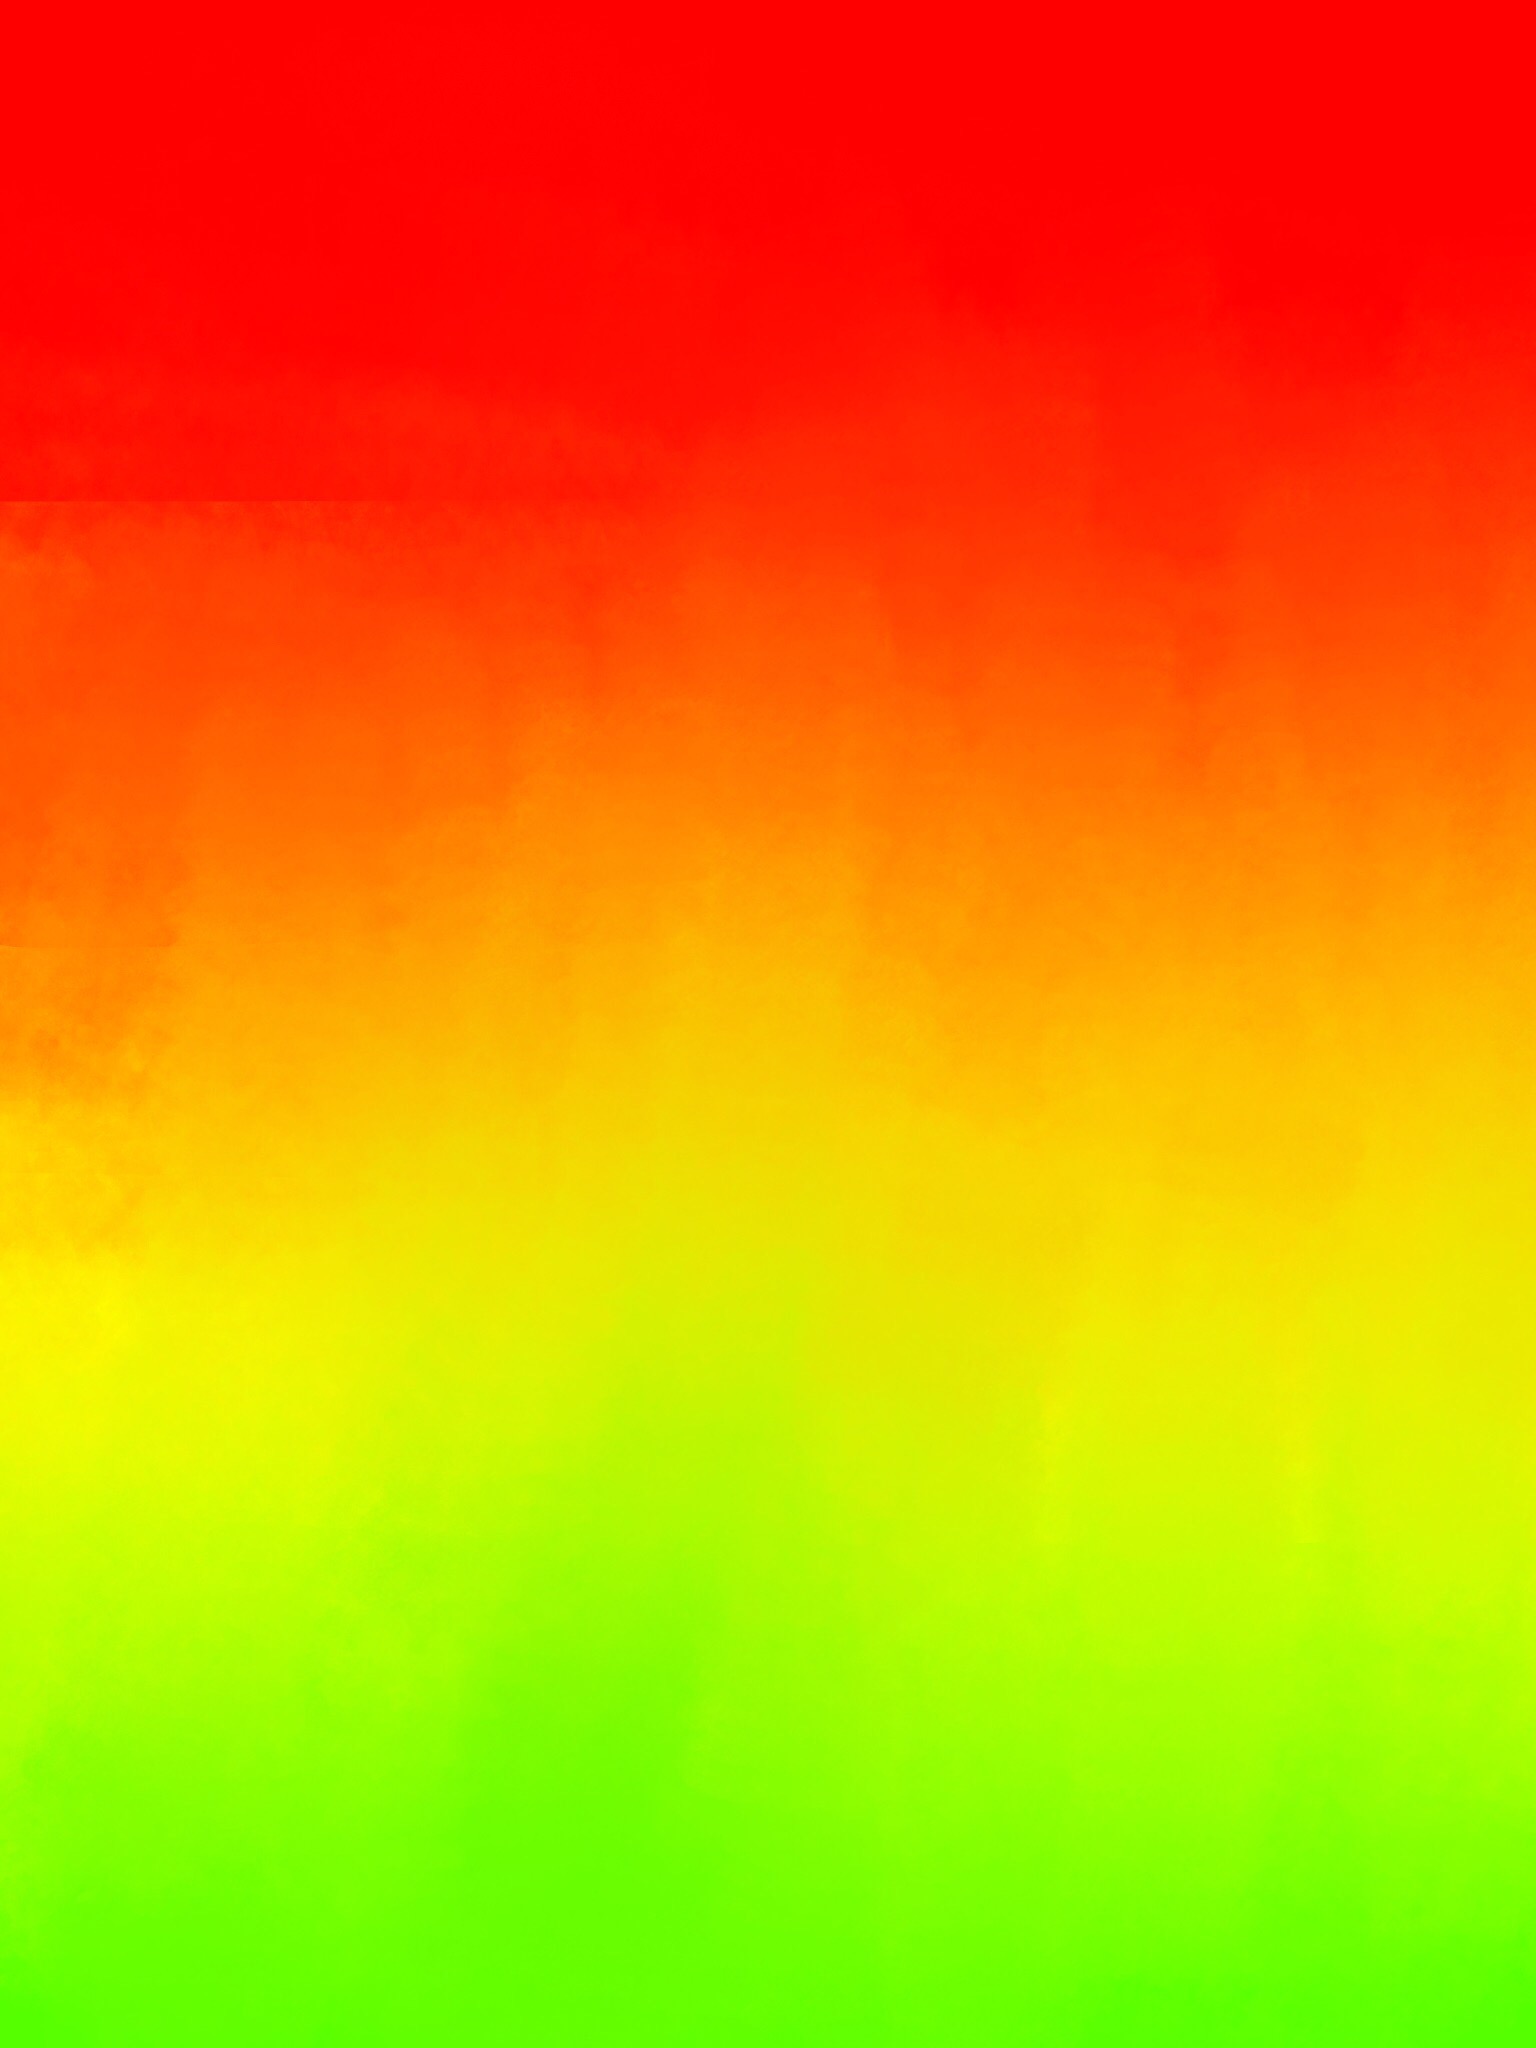 F2u red-orange-yellow-green background by newbornwolf45 on DeviantArt